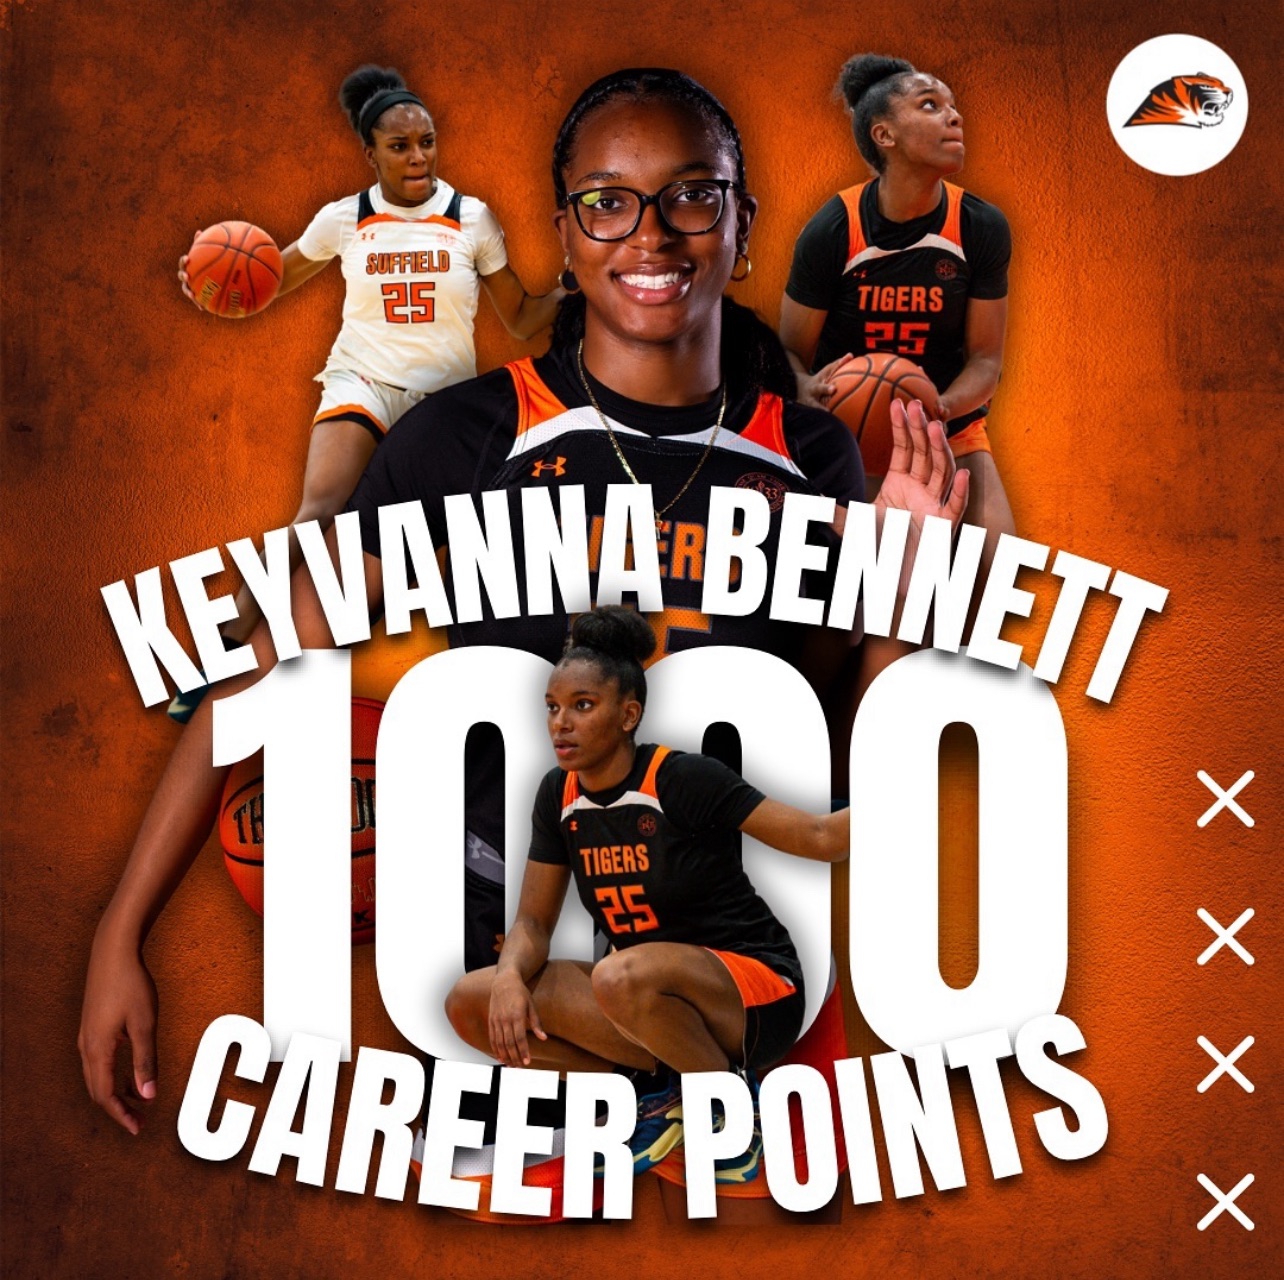 Keyvanna Bennett Scores 1000th Point